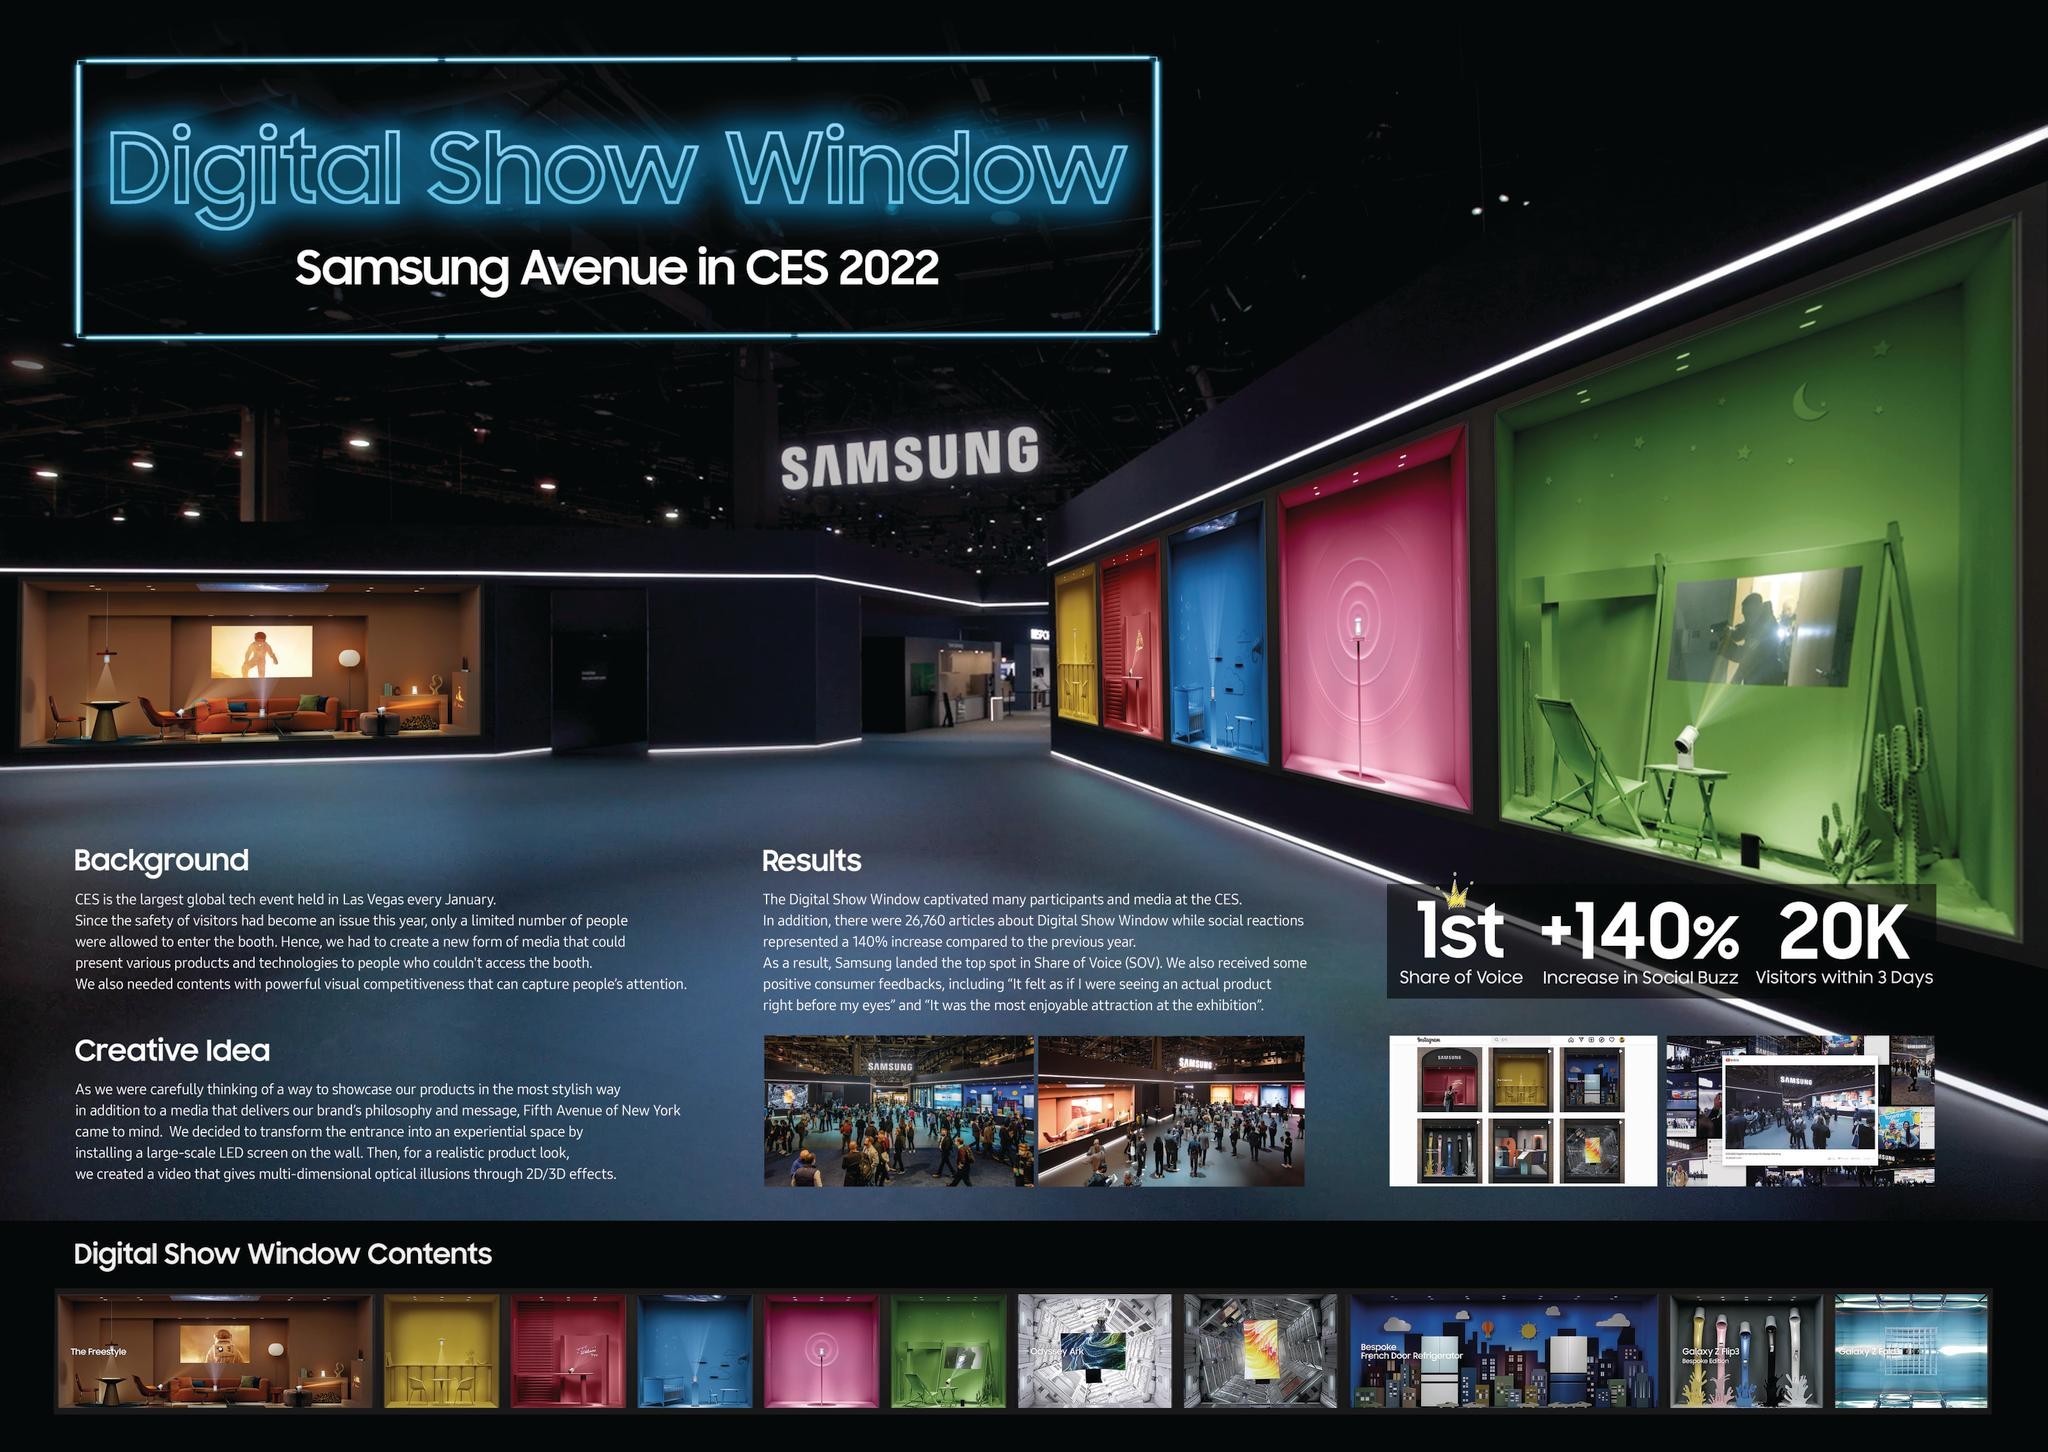 Digital Show Window